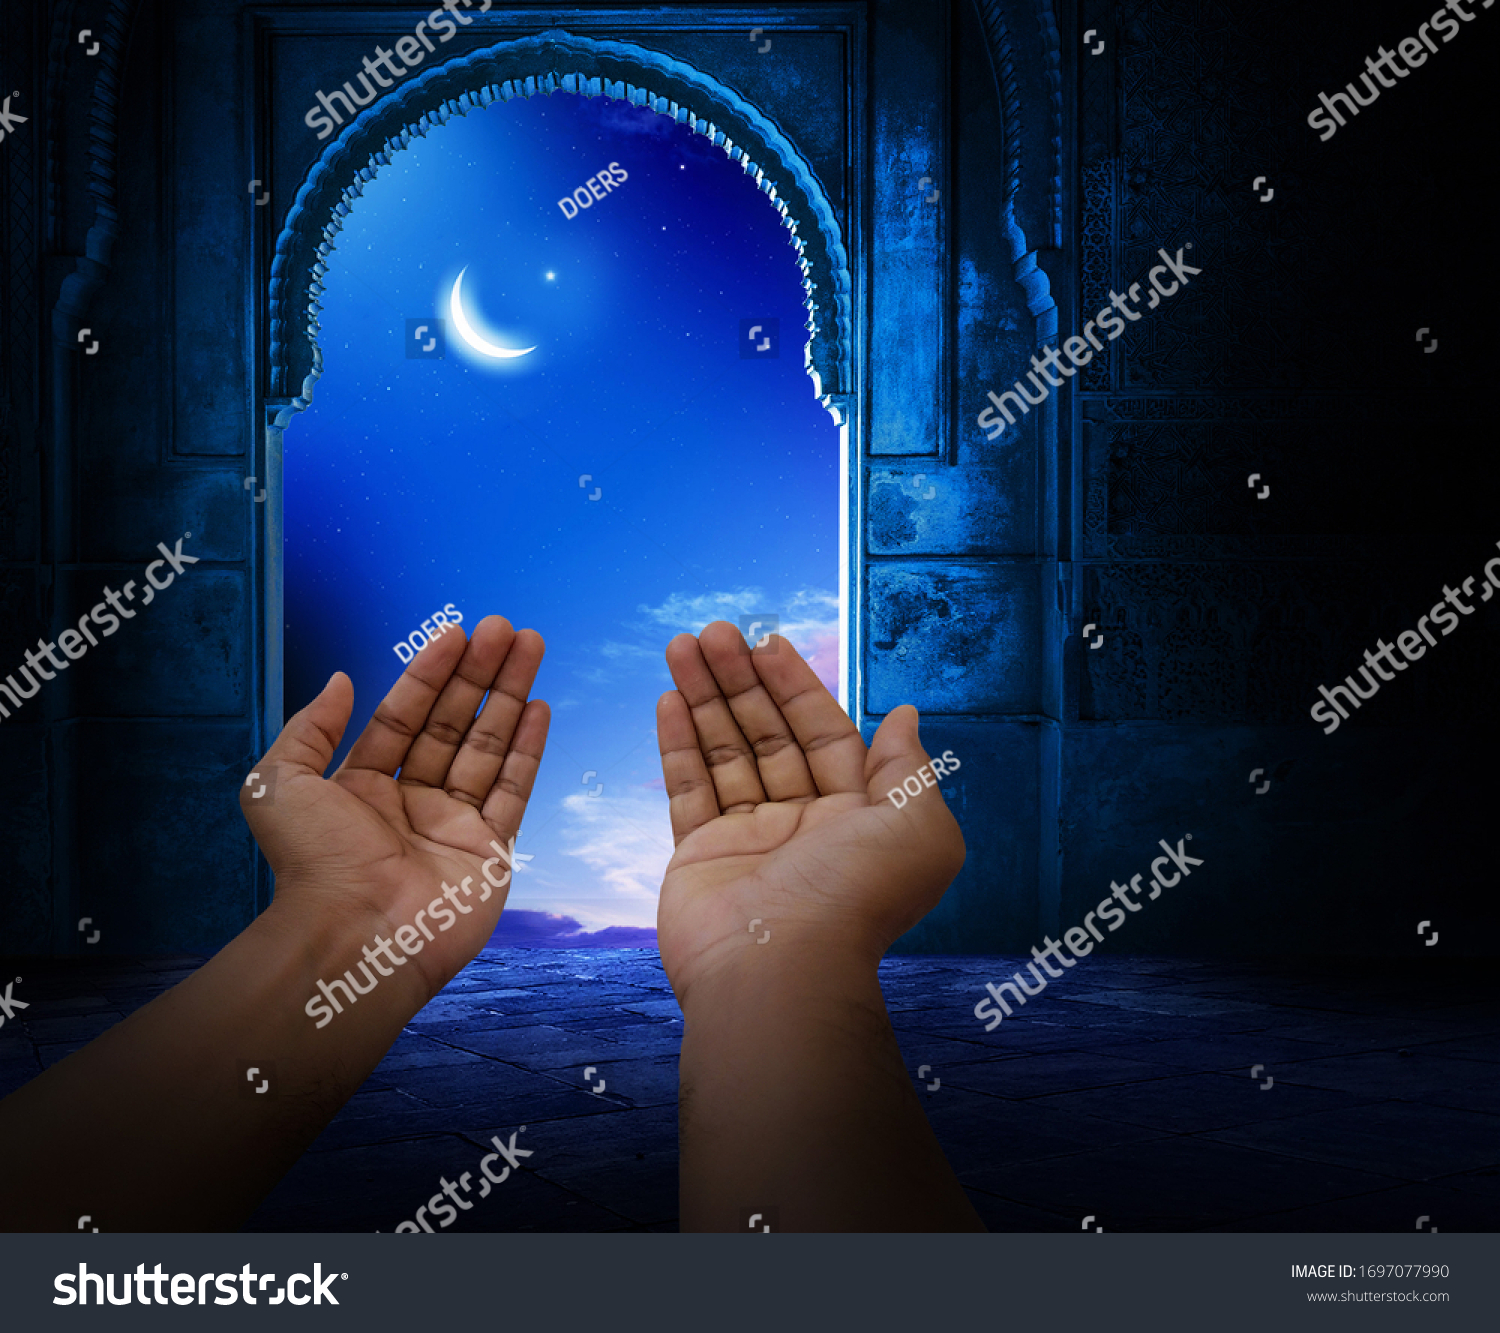 モスクの内装の背景にイスラム教徒の手 イスラムの壁紙のコンセプト イード ラマダン 祈り シャブ エバラット の写真素材 今すぐ編集